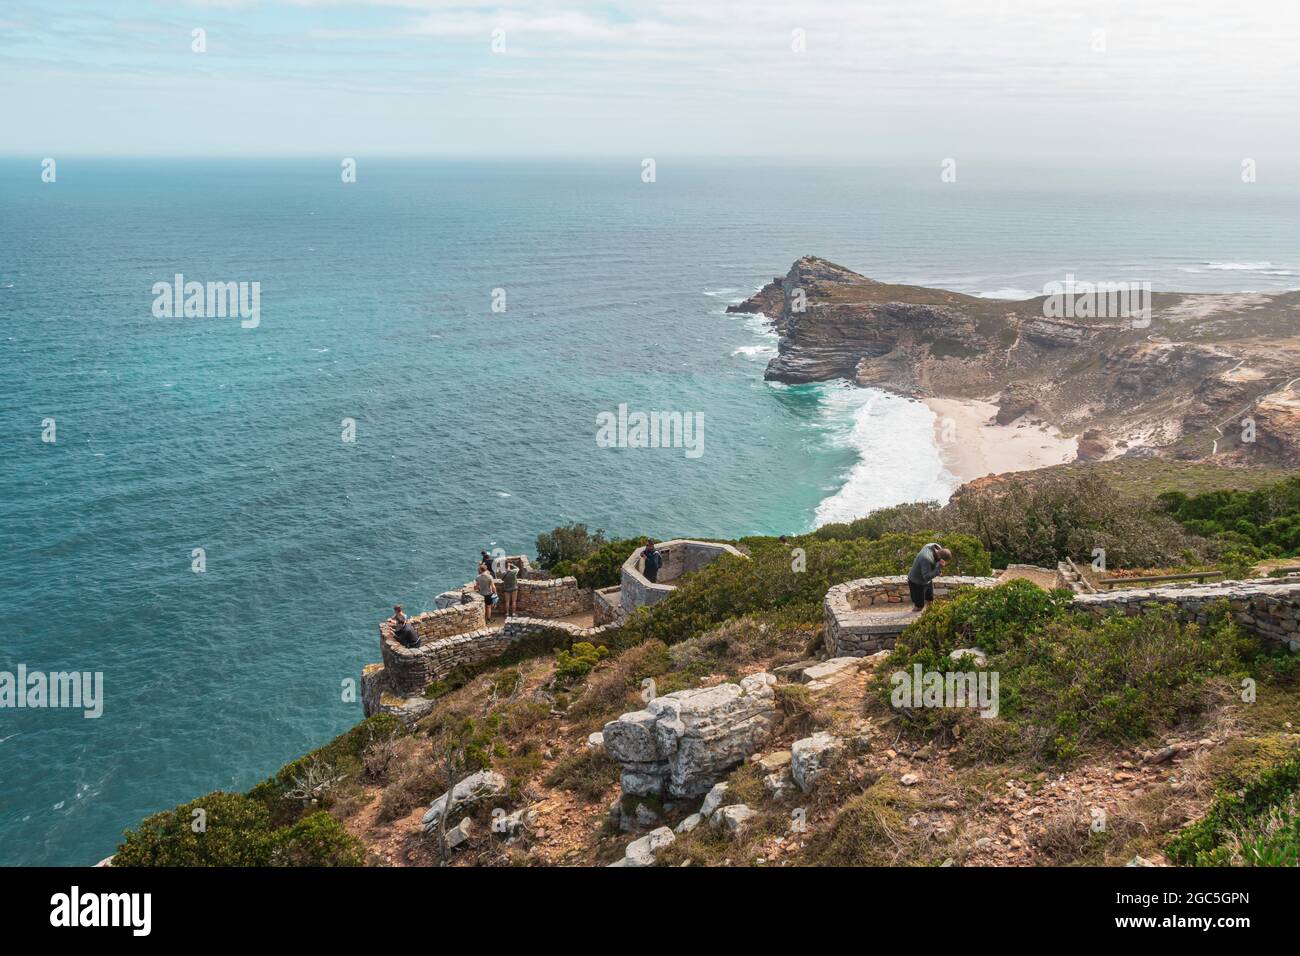 Blicken Sie auf die Terrasse mit Menschen am Cape Point mit Blick auf den Atlantik, Diaz Beach und Cape of Good Hope in Südafrika. Stockfoto